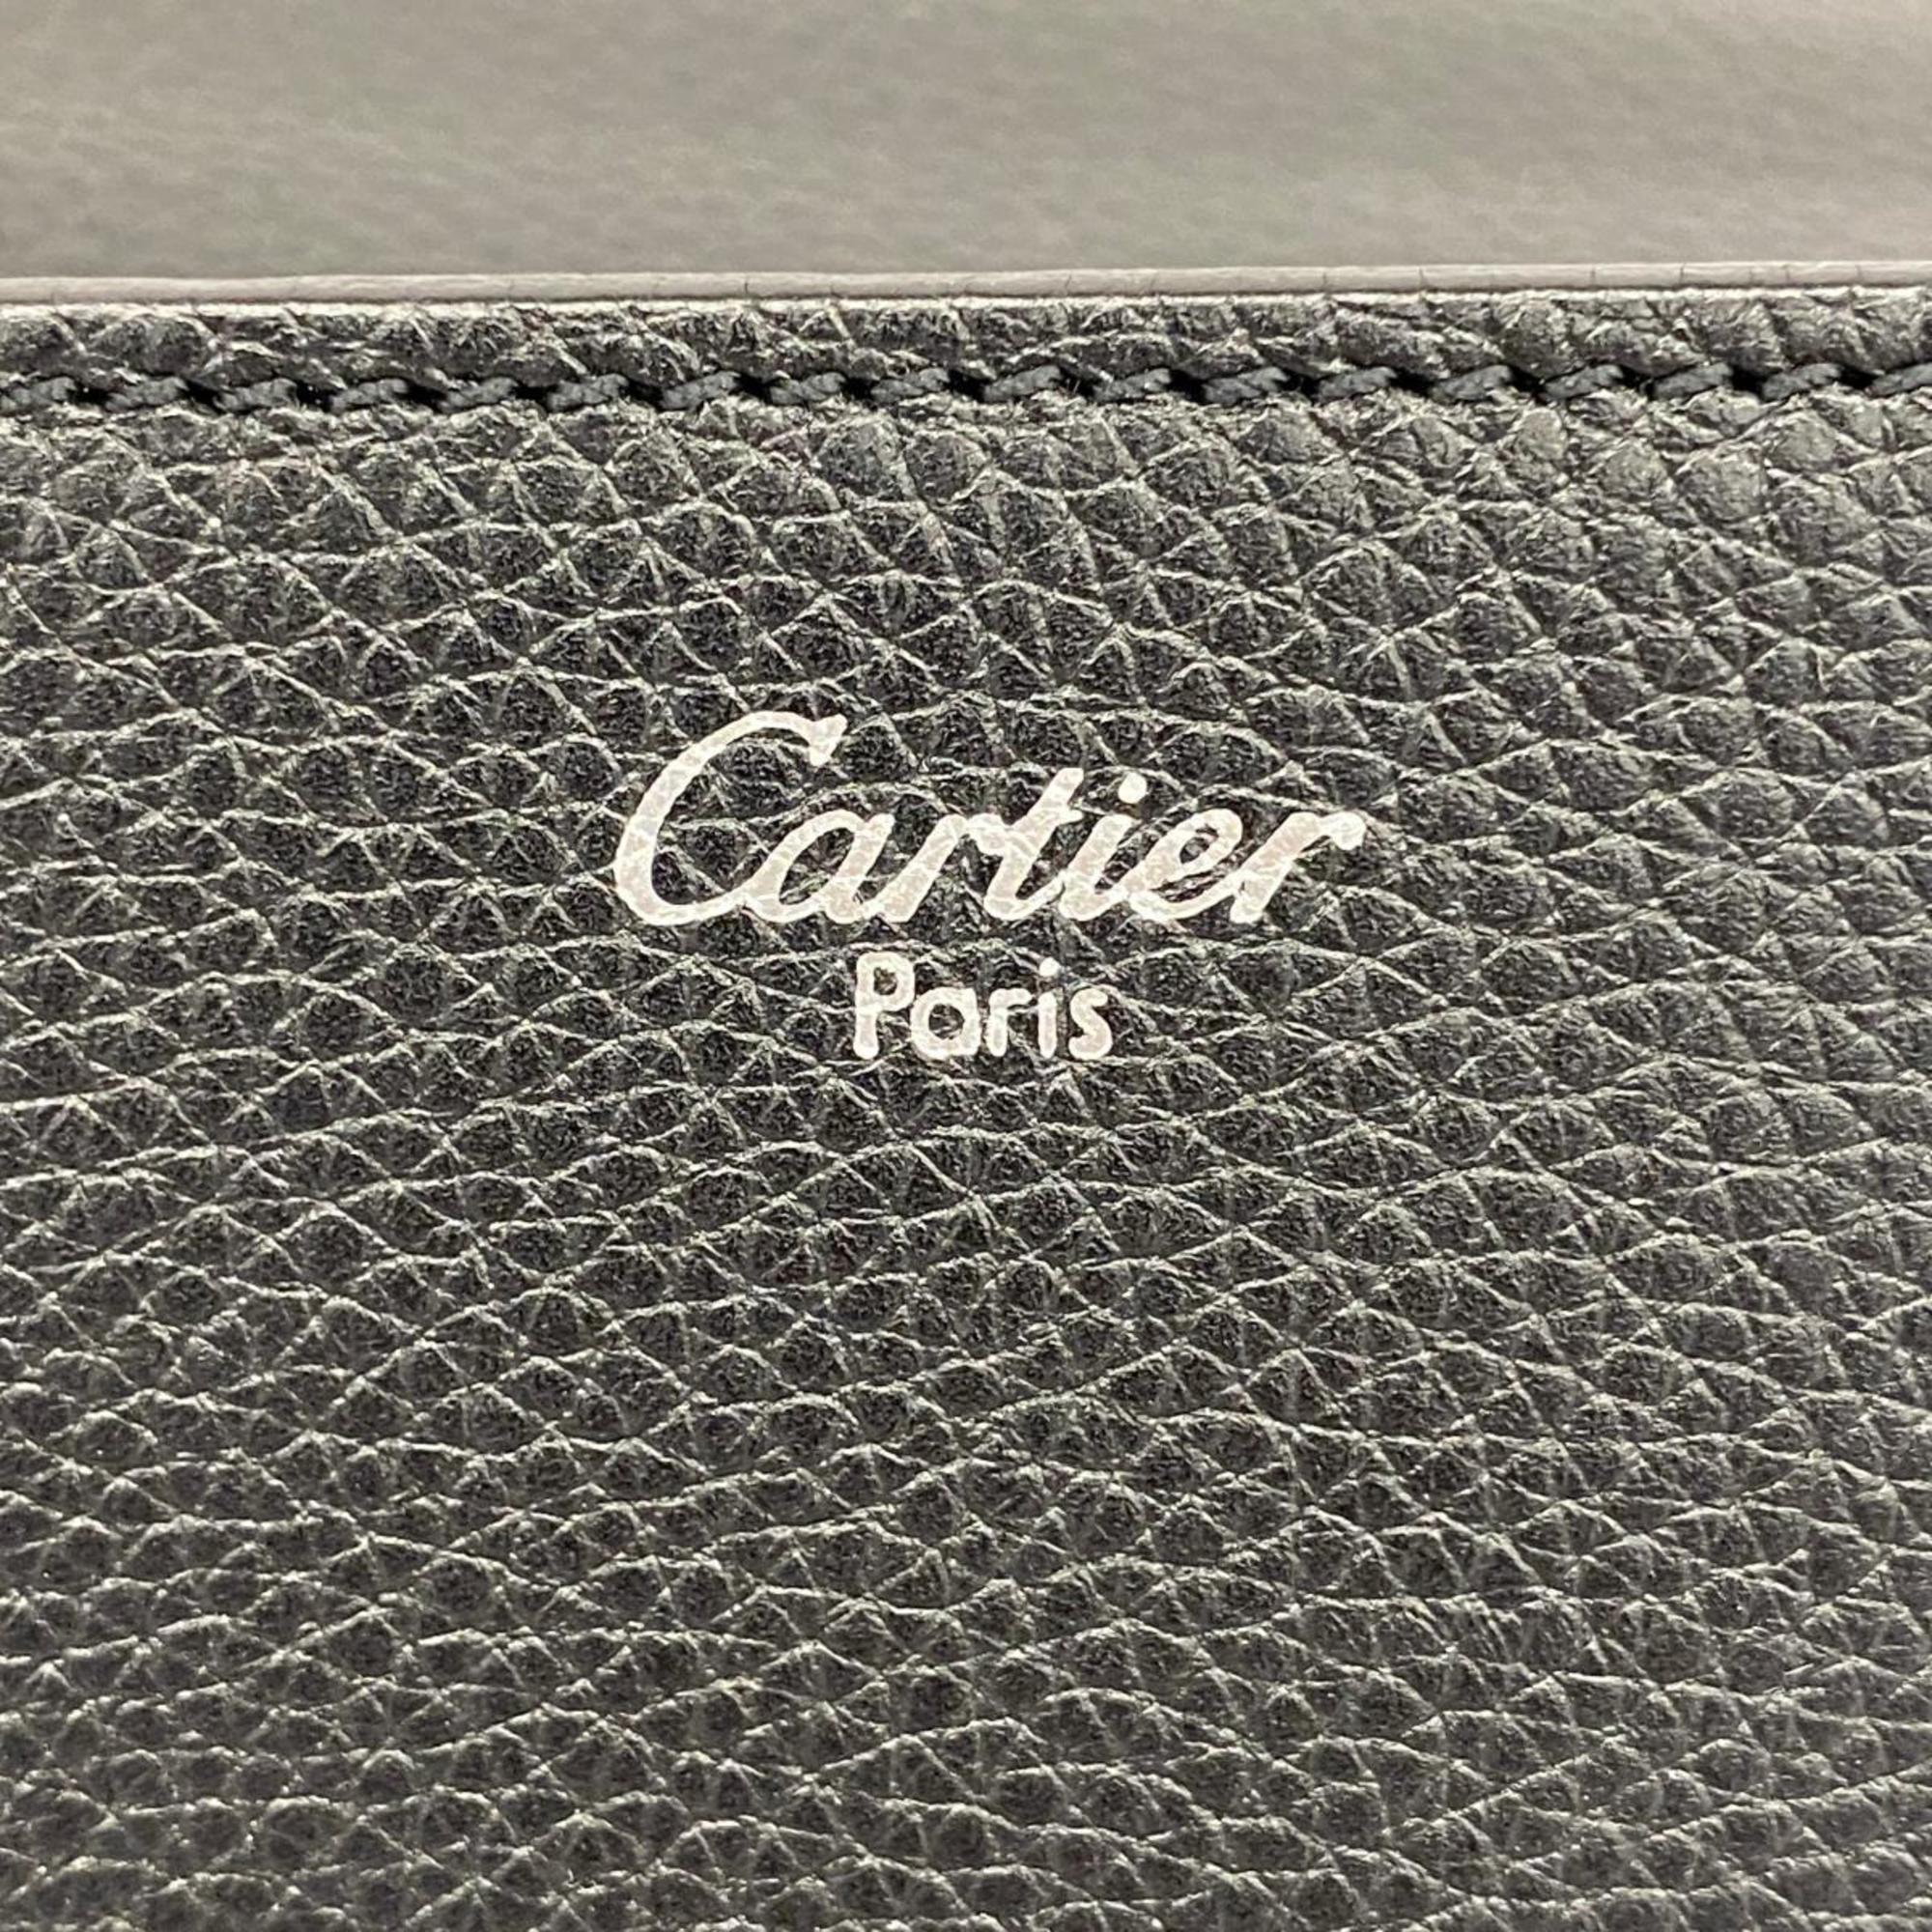 カルティエ(Cartier) カルティエ クラッチバッグ パシャ レザー ブラック   メンズ レディース